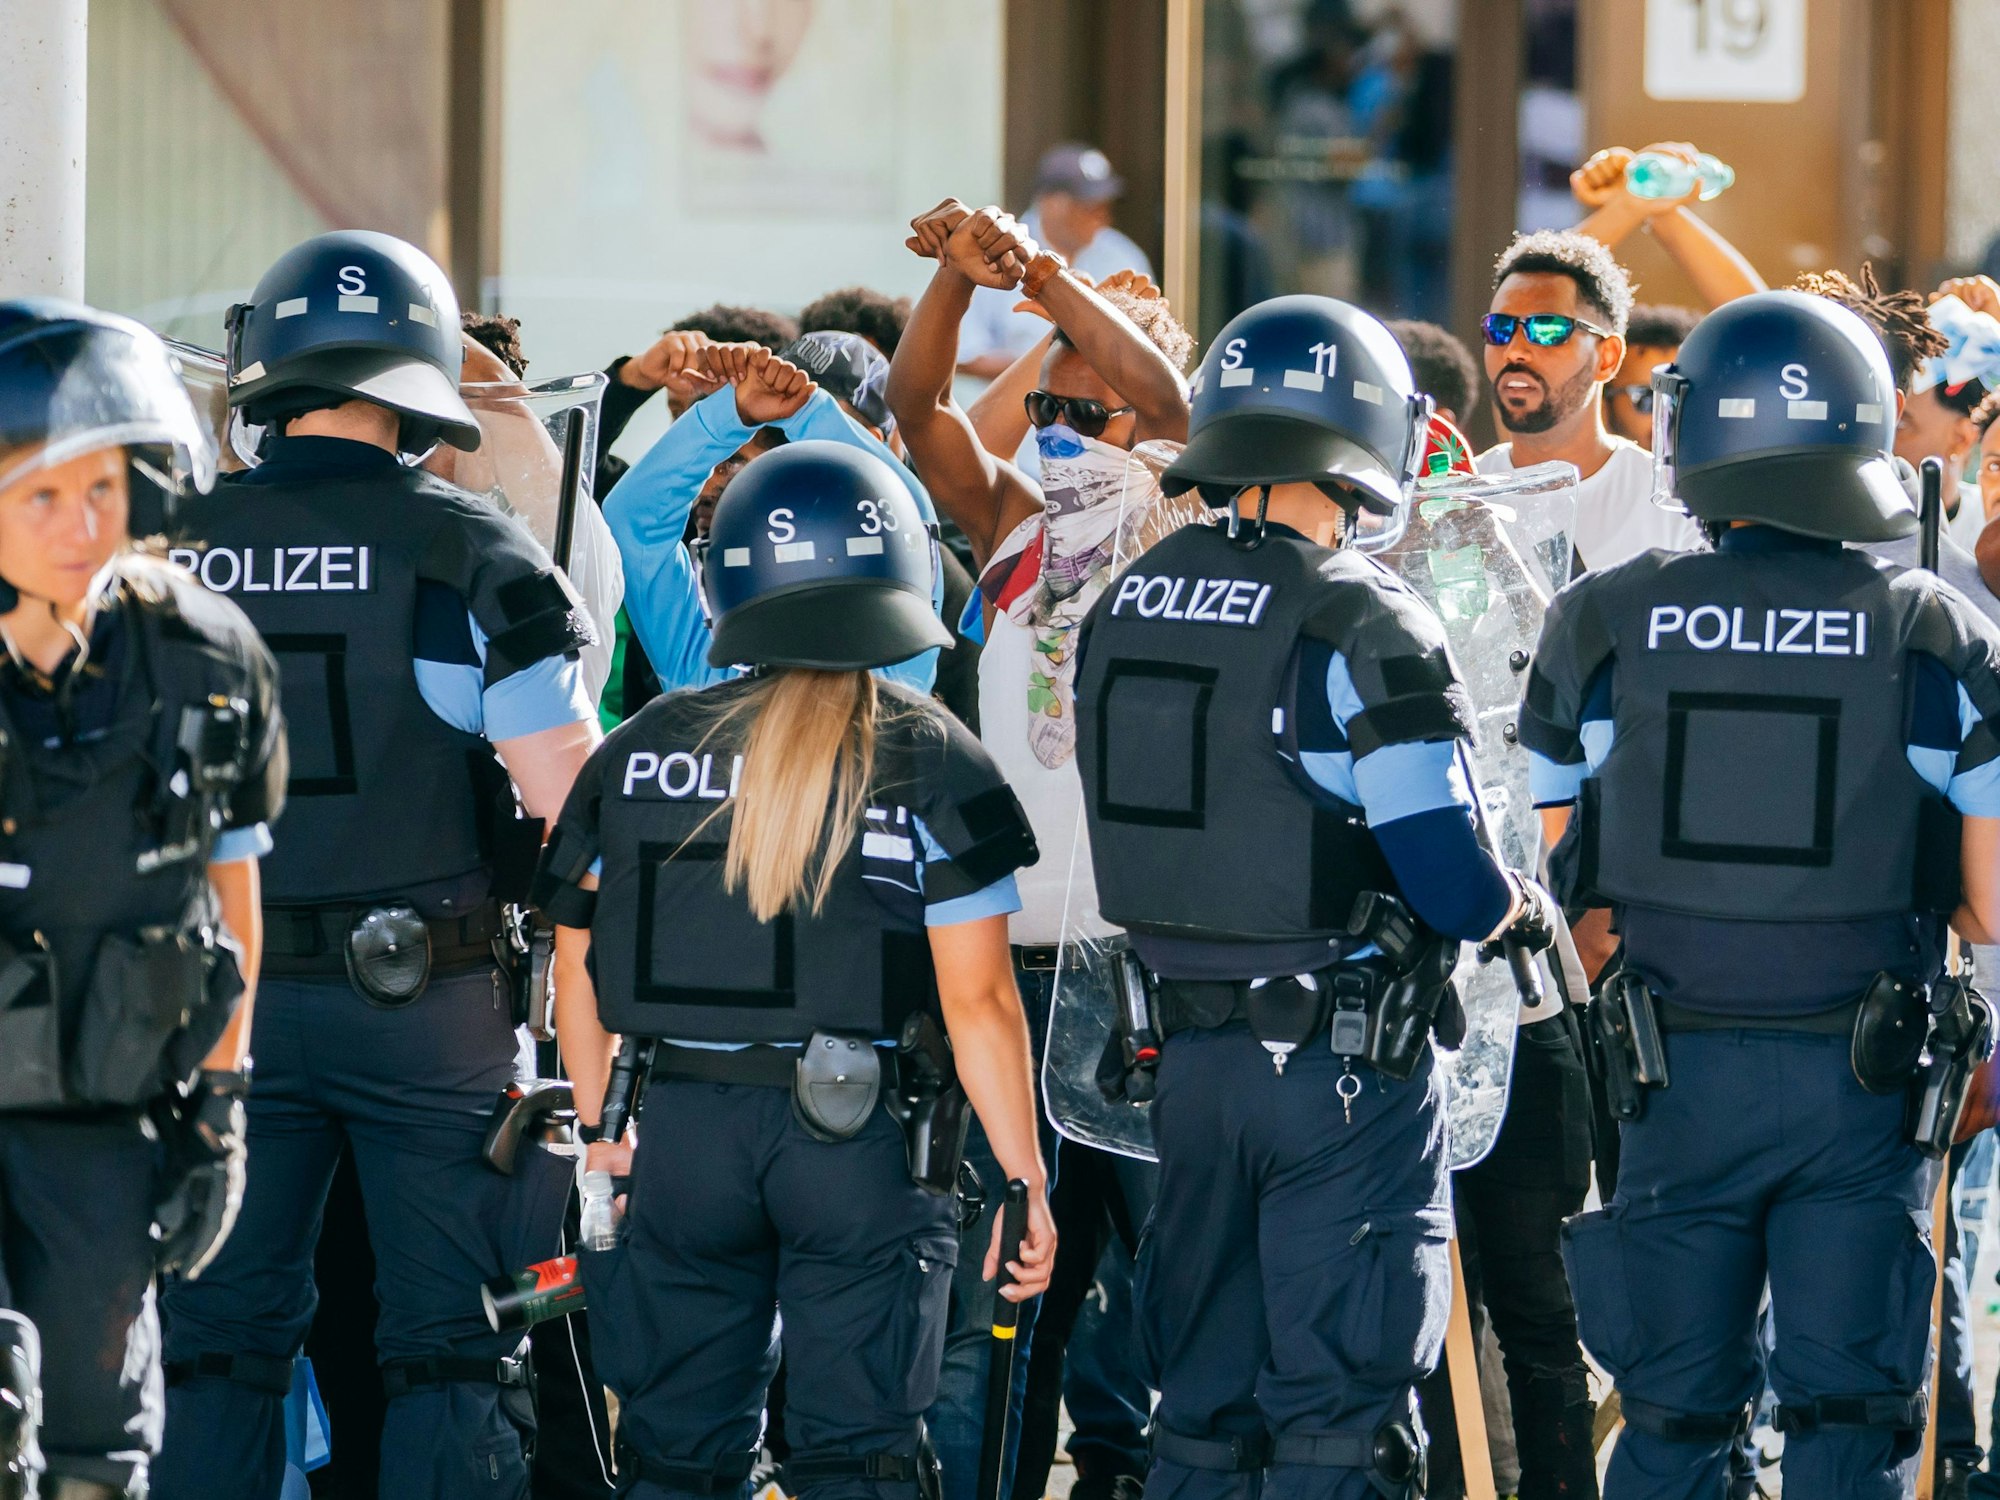 Eine Gruppe von Menschen wird nach Ausschreitungen bei einer Eritrea-Veranstaltung am Samstag von Polizeikräften eingekesselt.